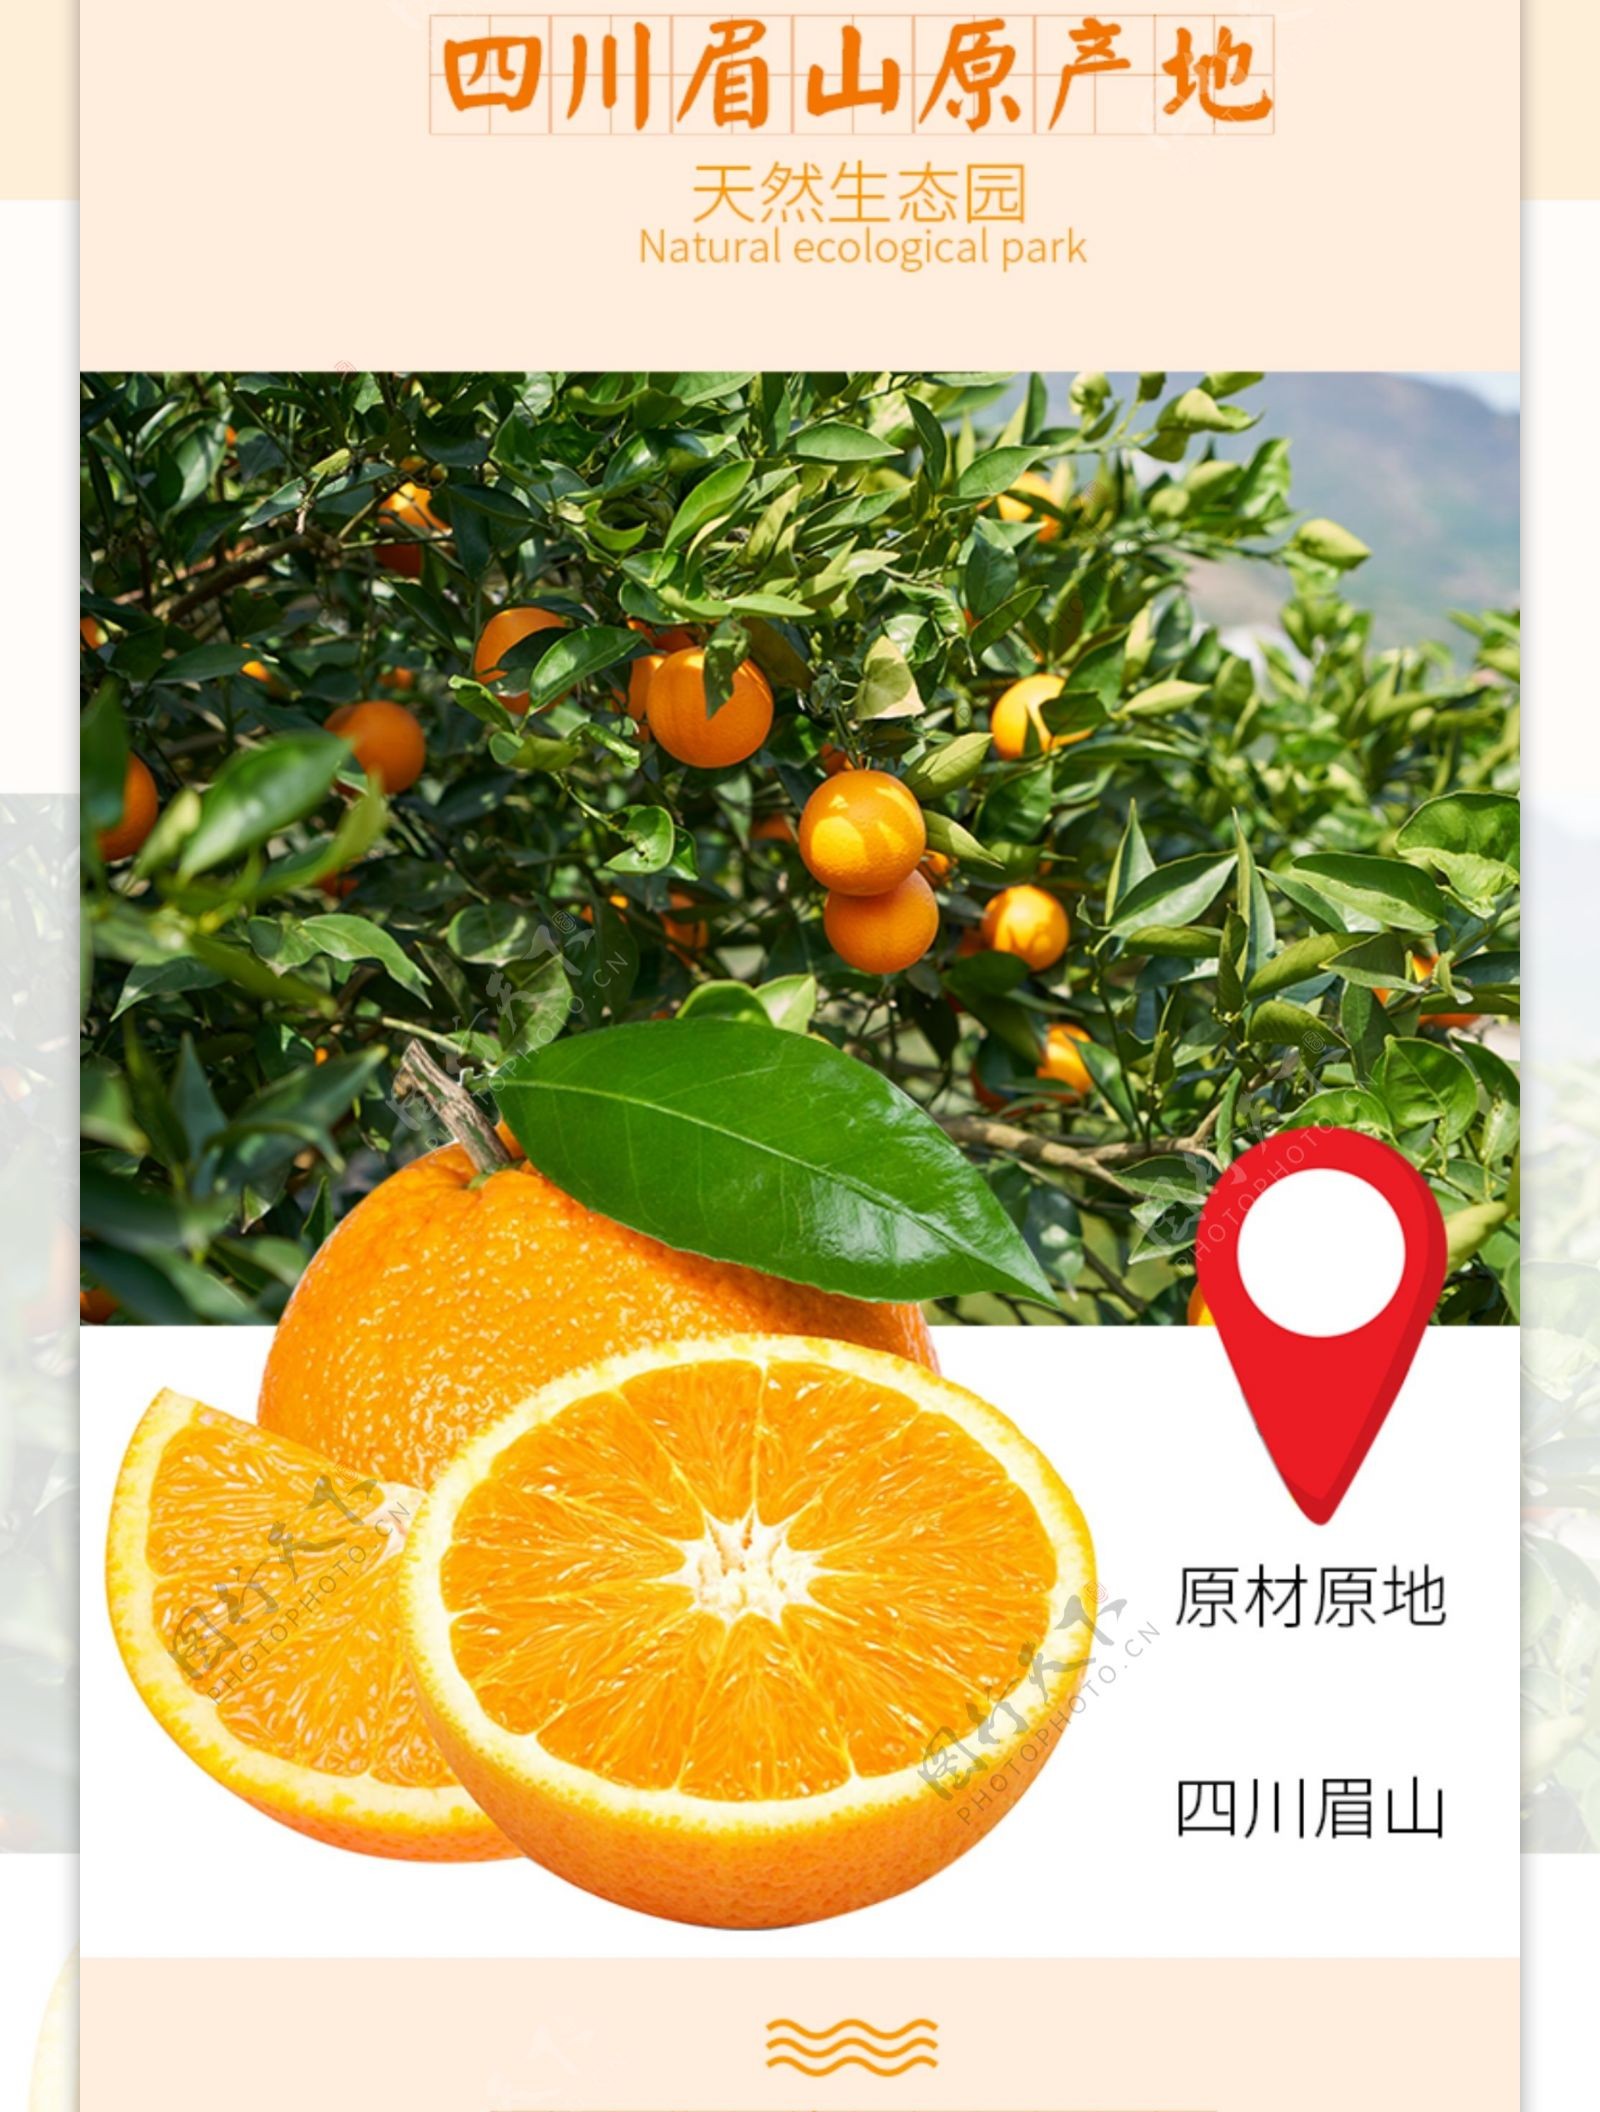 美味新鲜橙子促销淘宝详情页